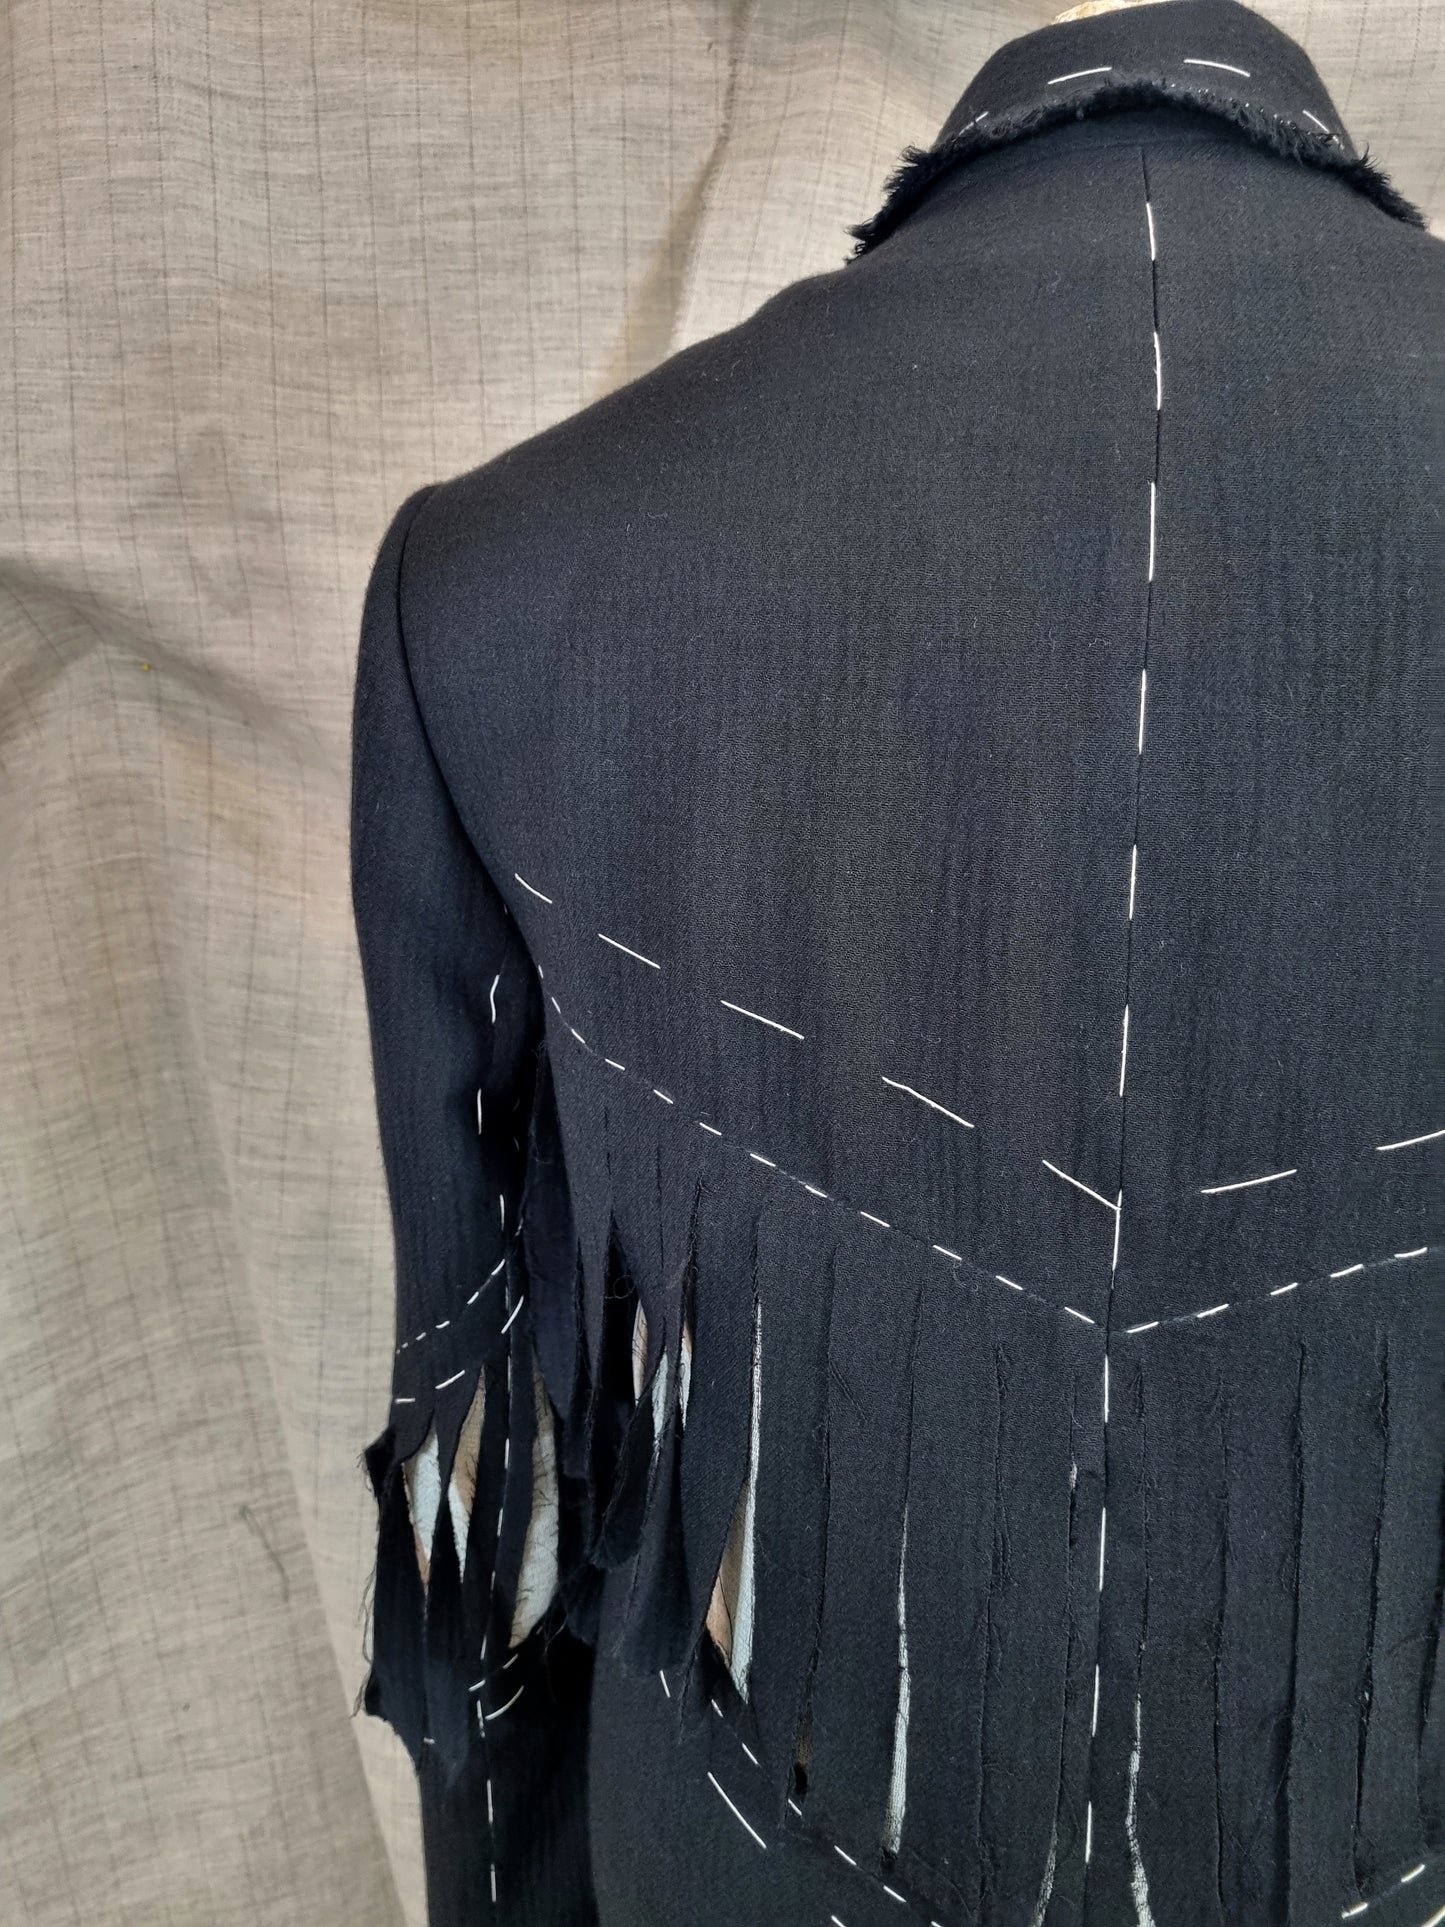 Black Jacket With Fringe And Handmade Decorative Stitching